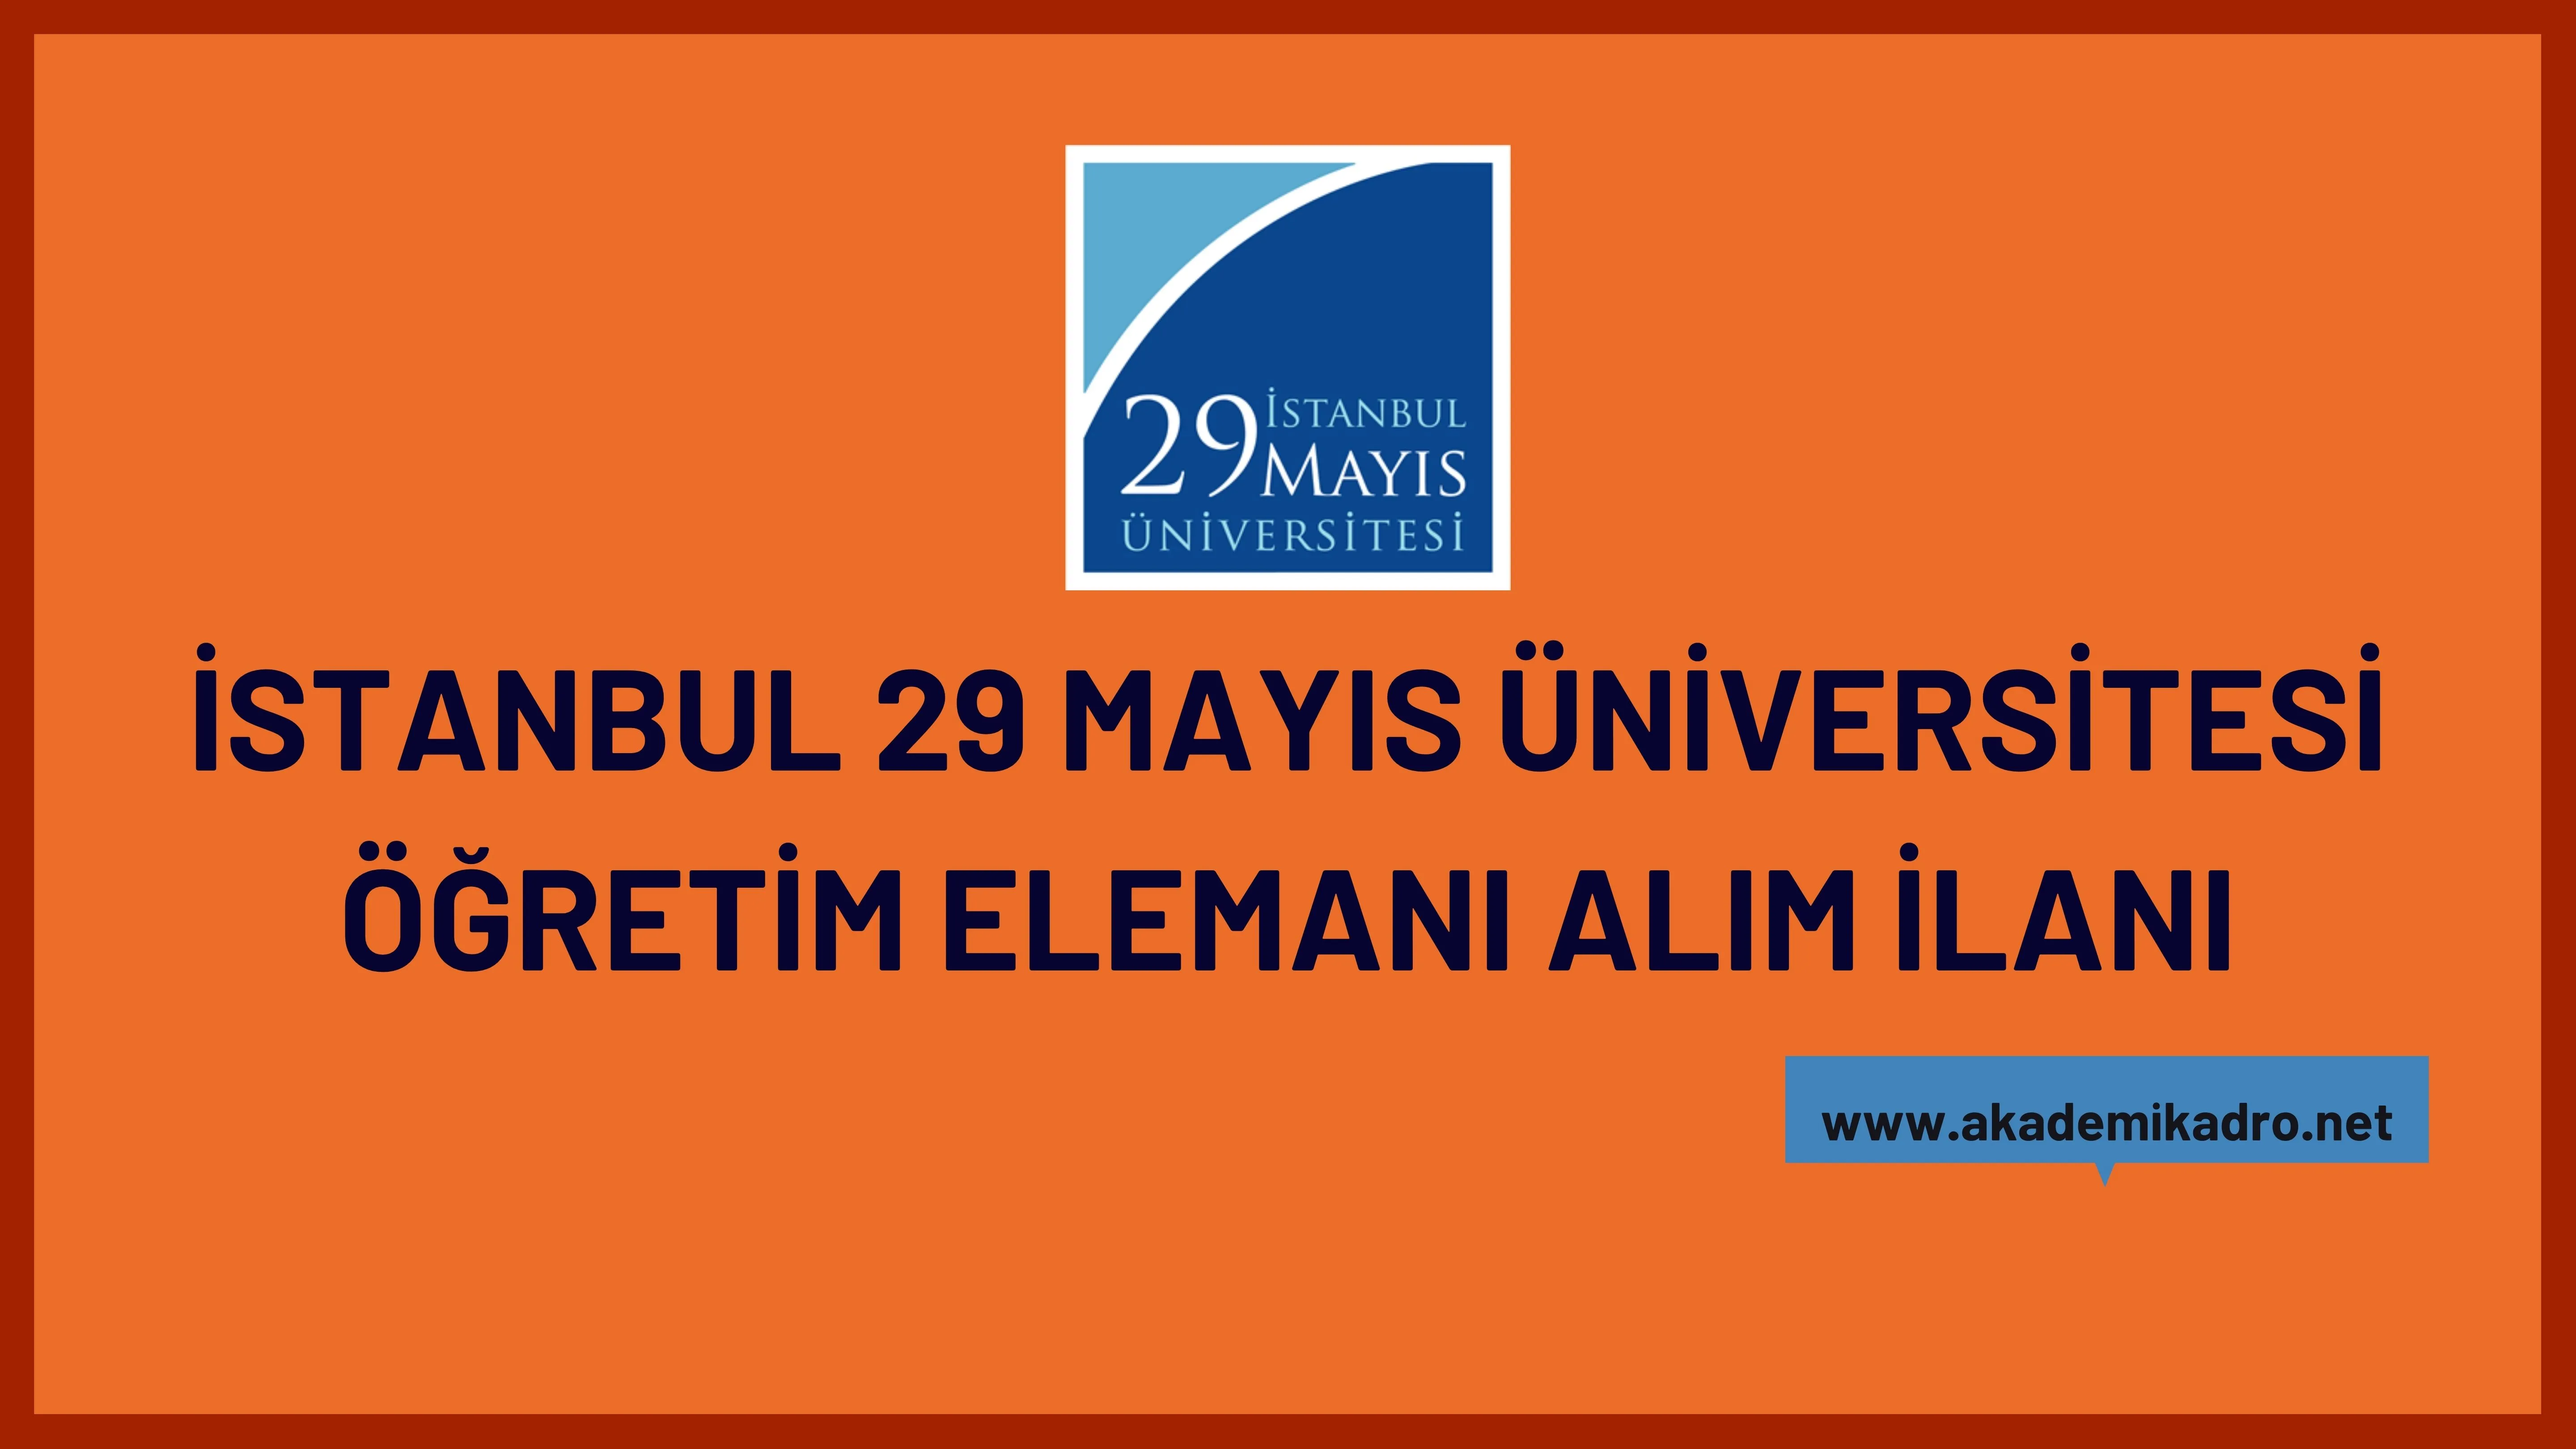 İstanbul 29 Mayıs Üniversitesi 2 Araştırma görevlisi ve çeşitli alanlardan 6 Öğretim üyesi alacak.